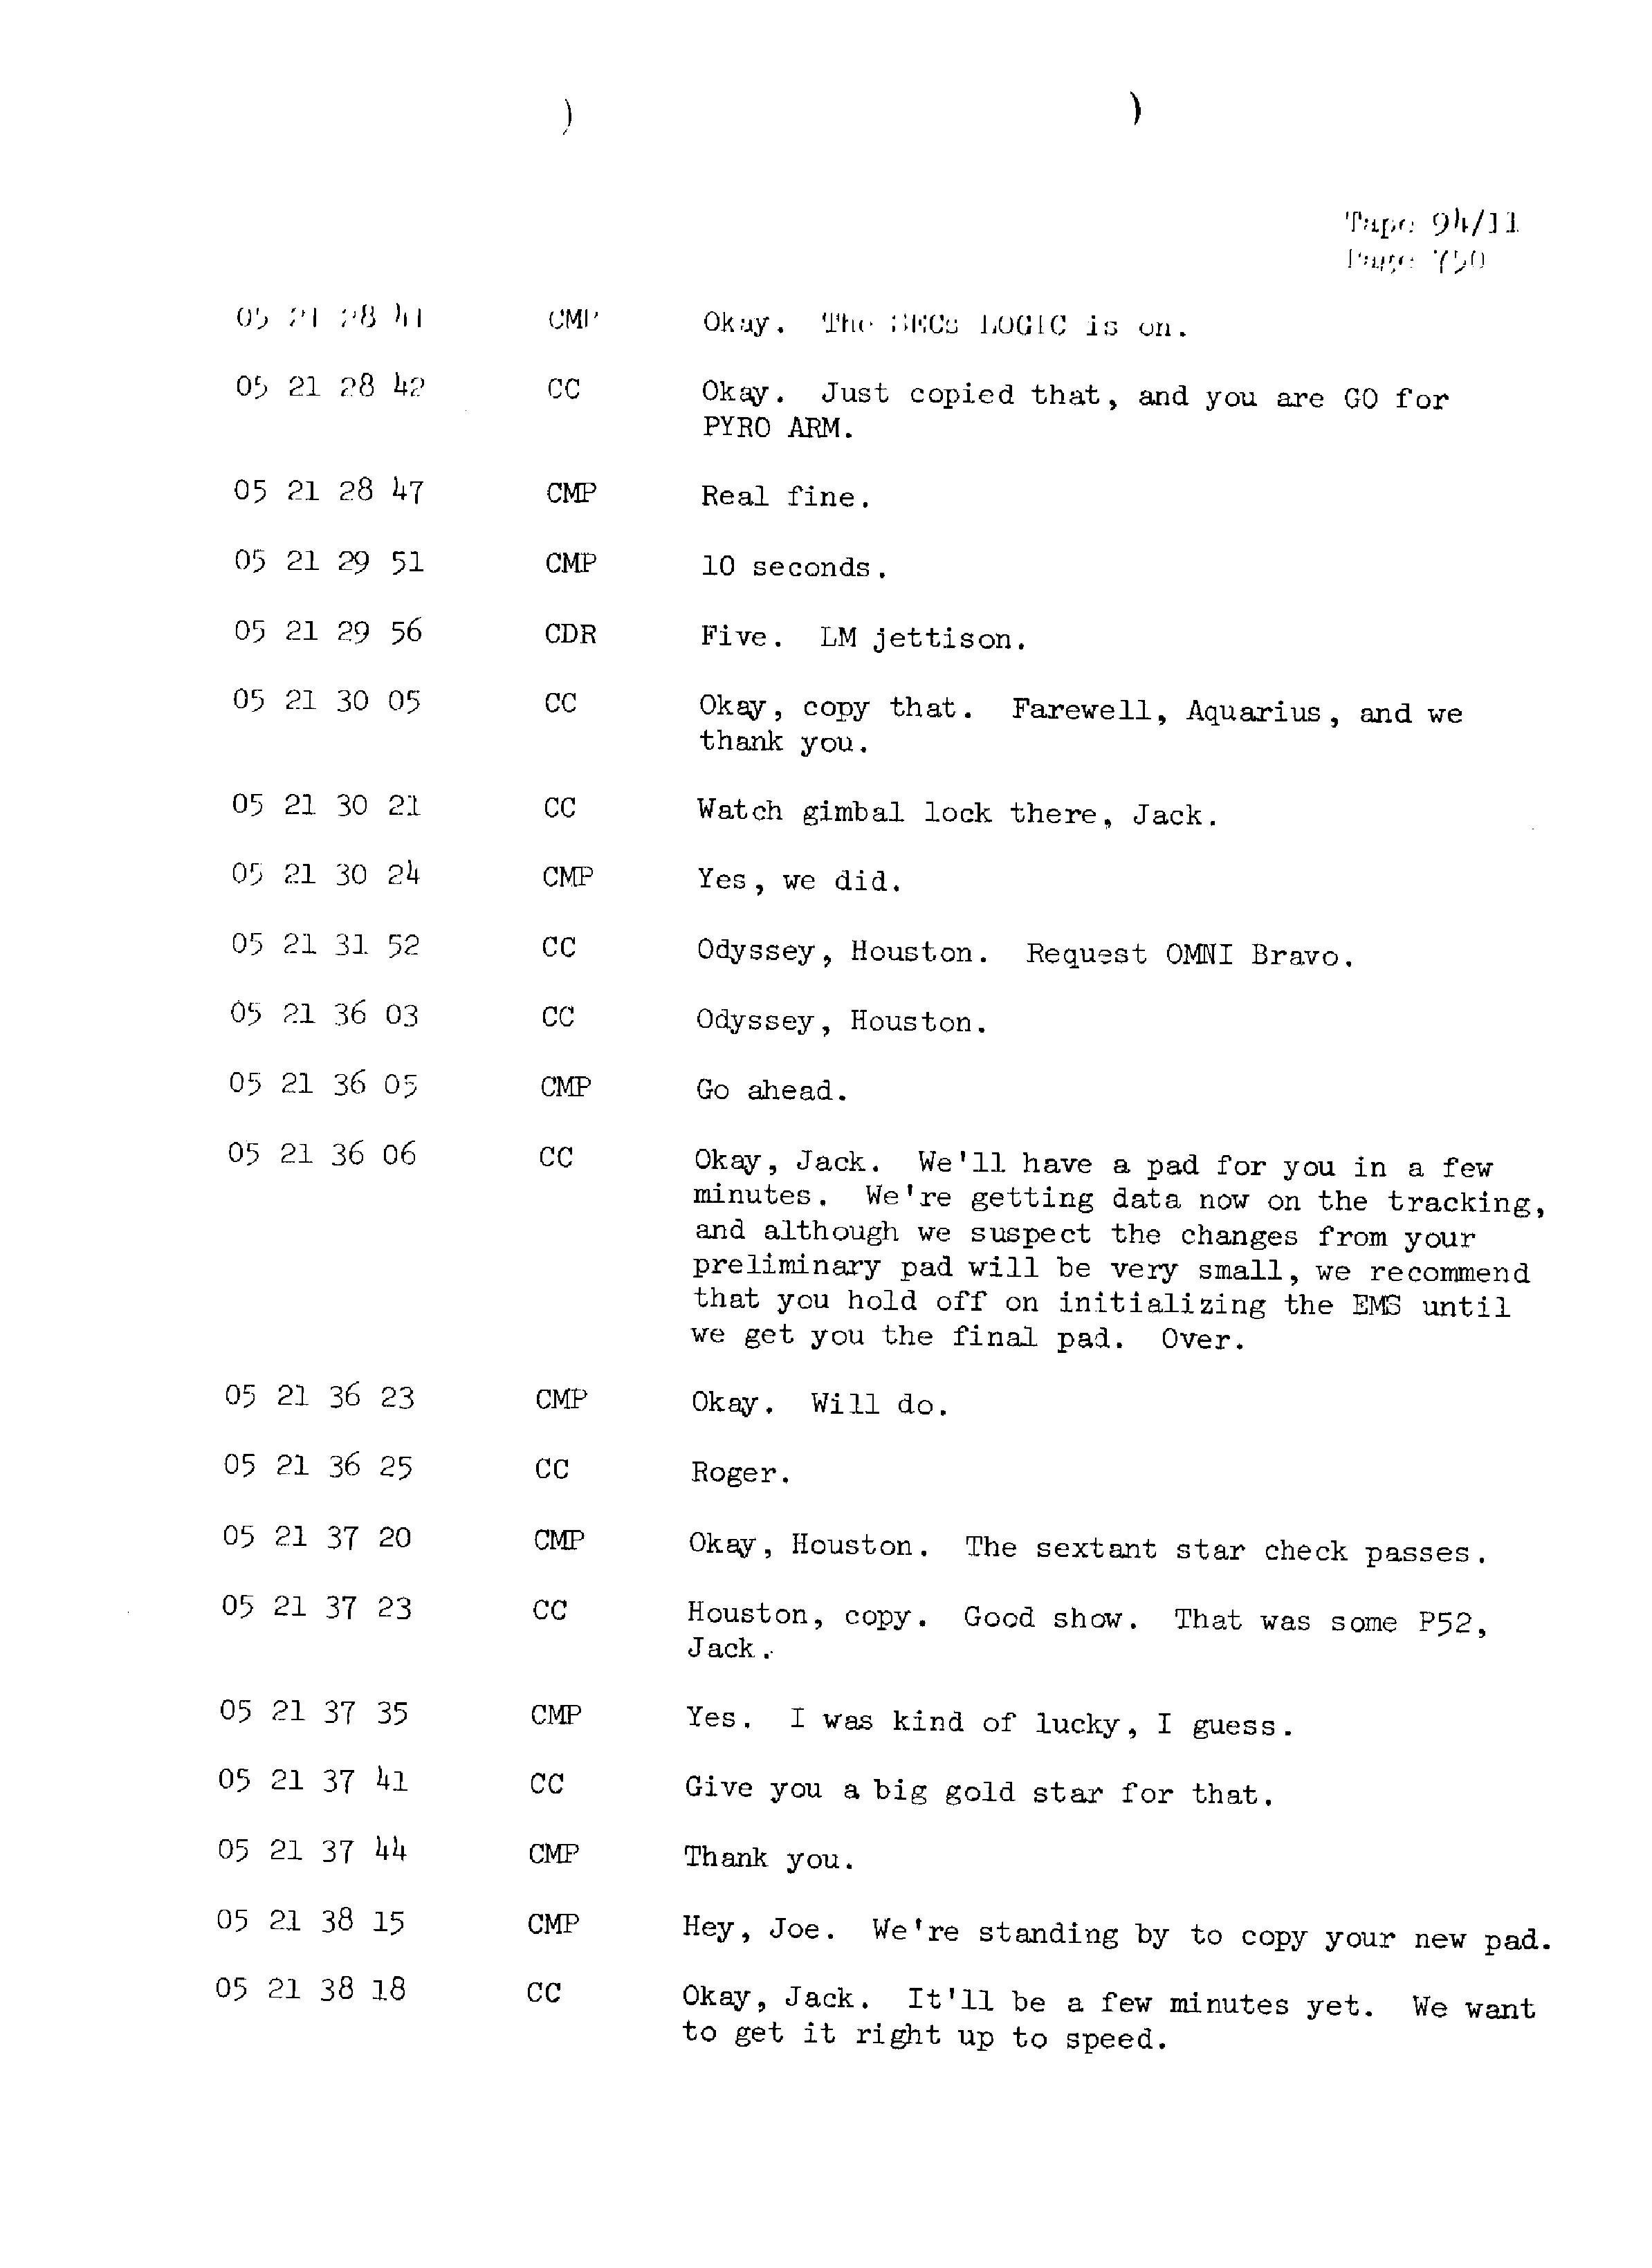 Page 757 of Apollo 13’s original transcript